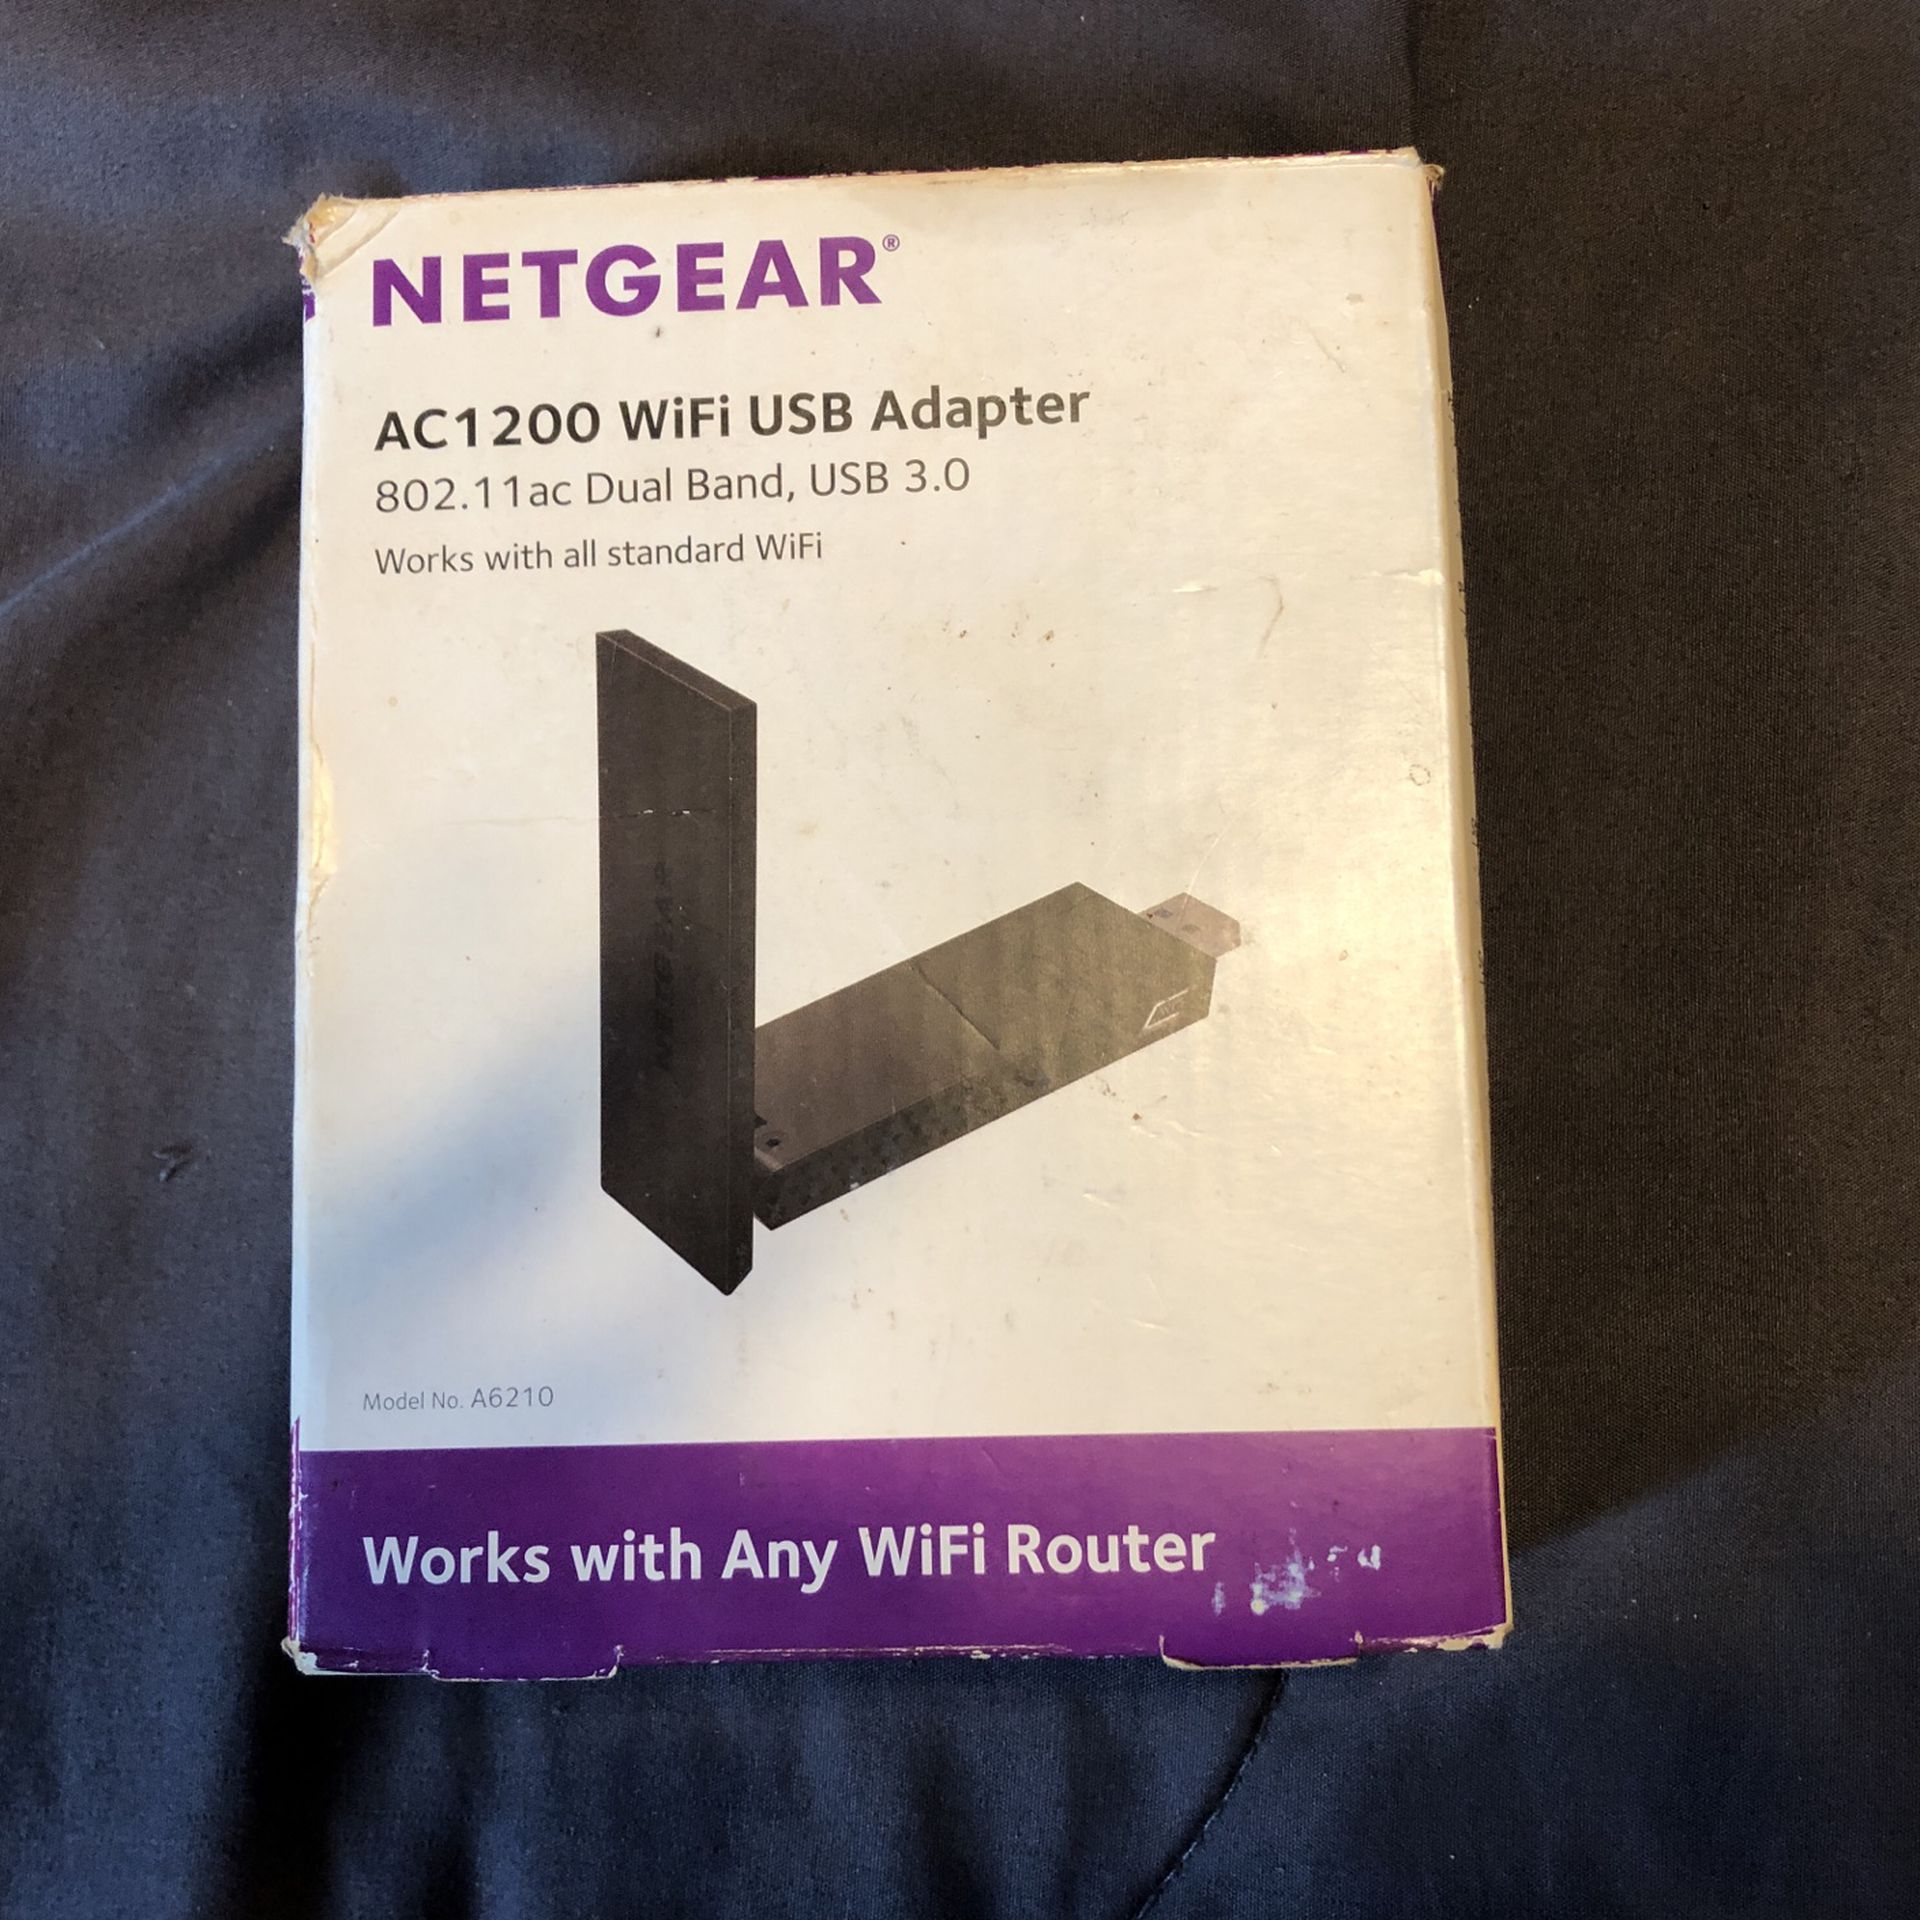 Netgear Ac1200 Wi-Fi USB Adapter